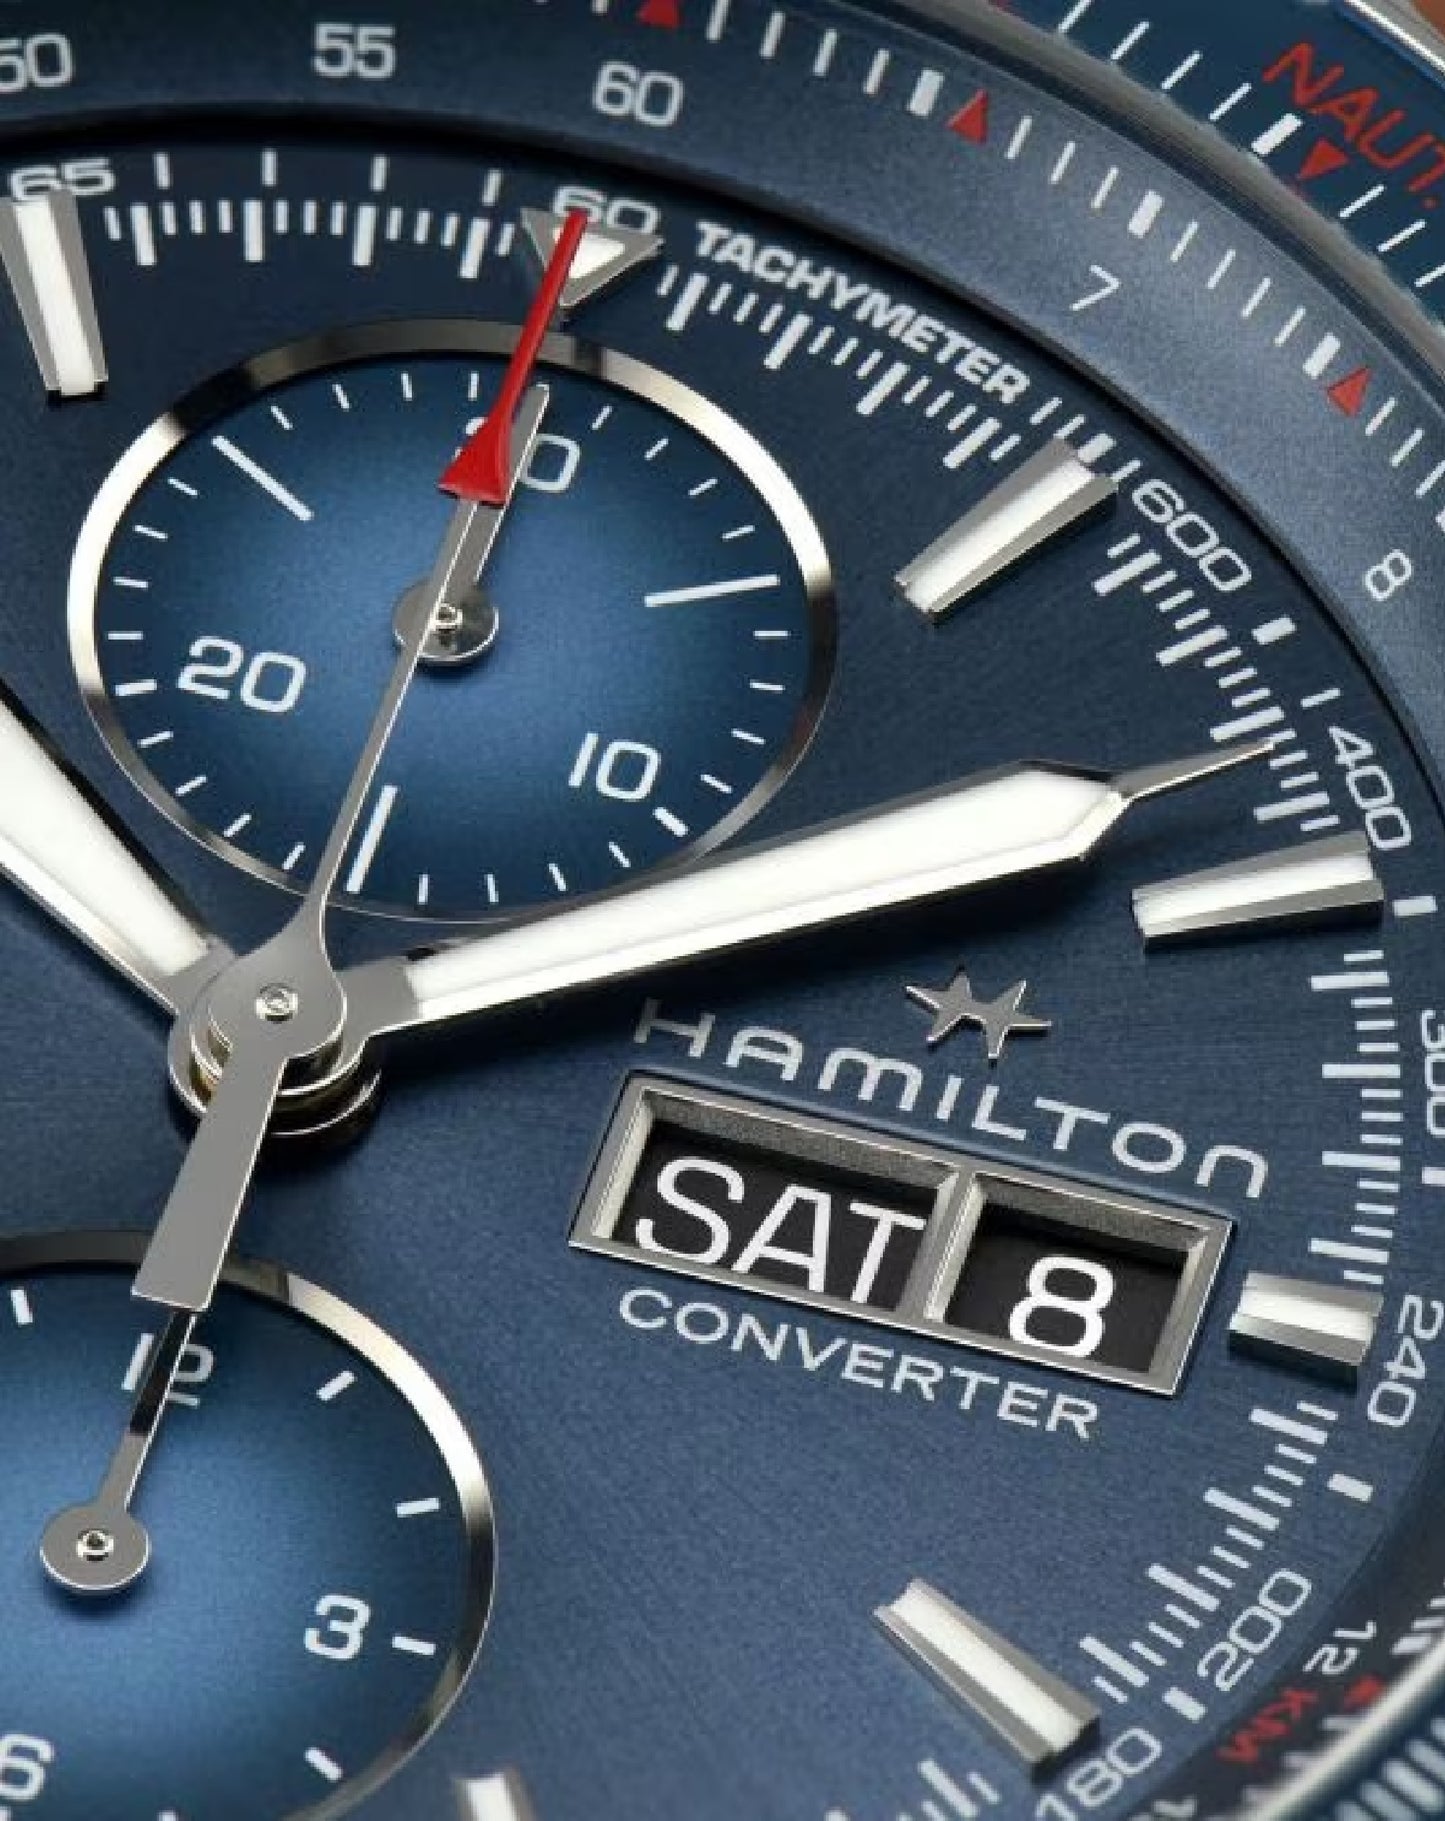 Hamilton H76746140 Hamilton Khaki Aviation Converter Auto-Chrono Watch